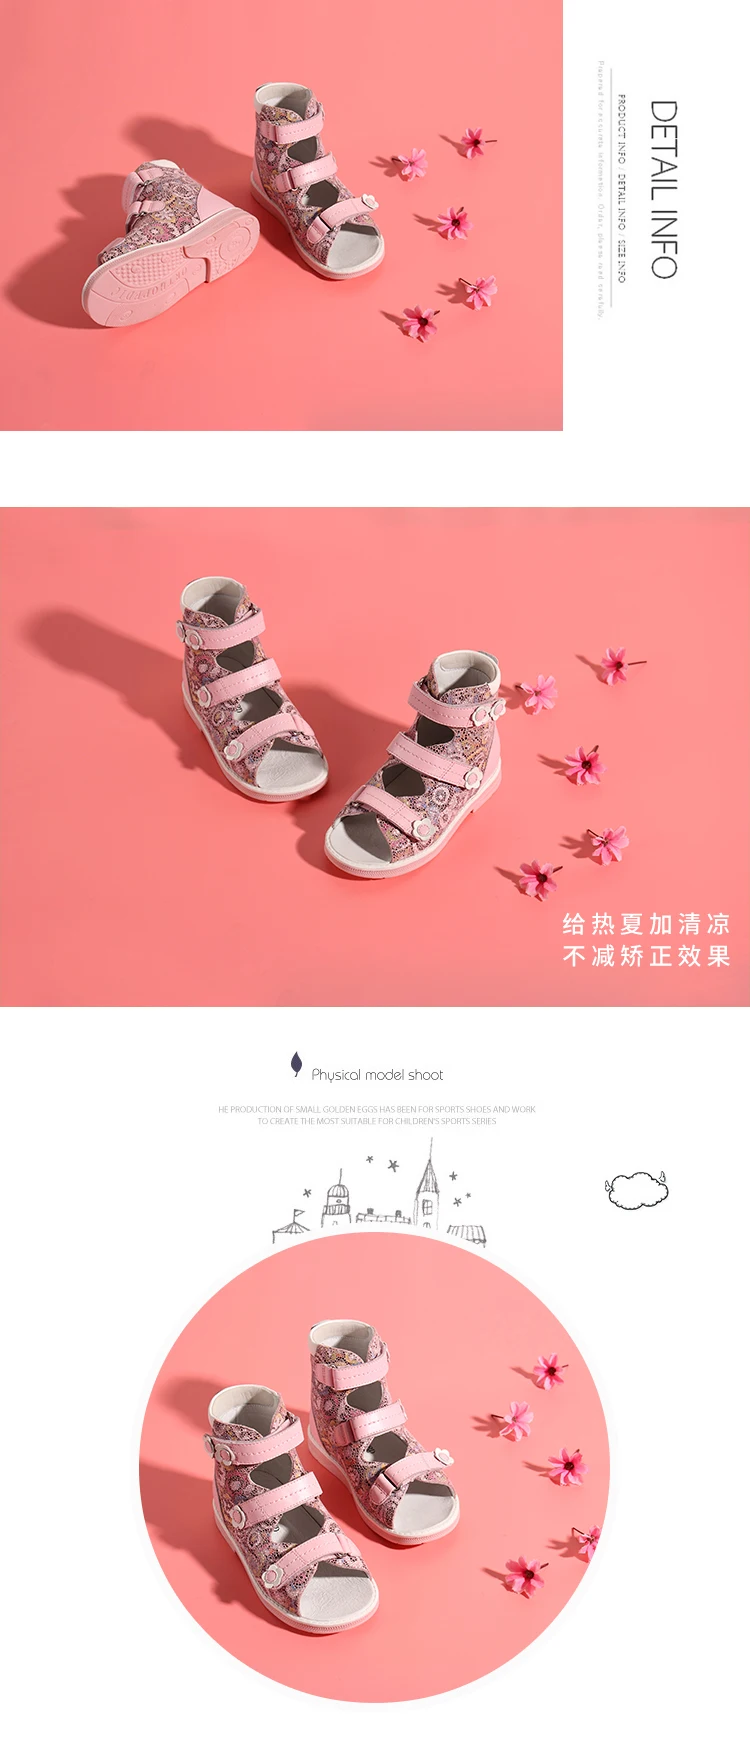 Princepard/ г. Новая летняя ортопедическая обувь для девочек, кожаные ортопедические сандалии для детей, размер 21-36, розовые сандалии с принтом для детей